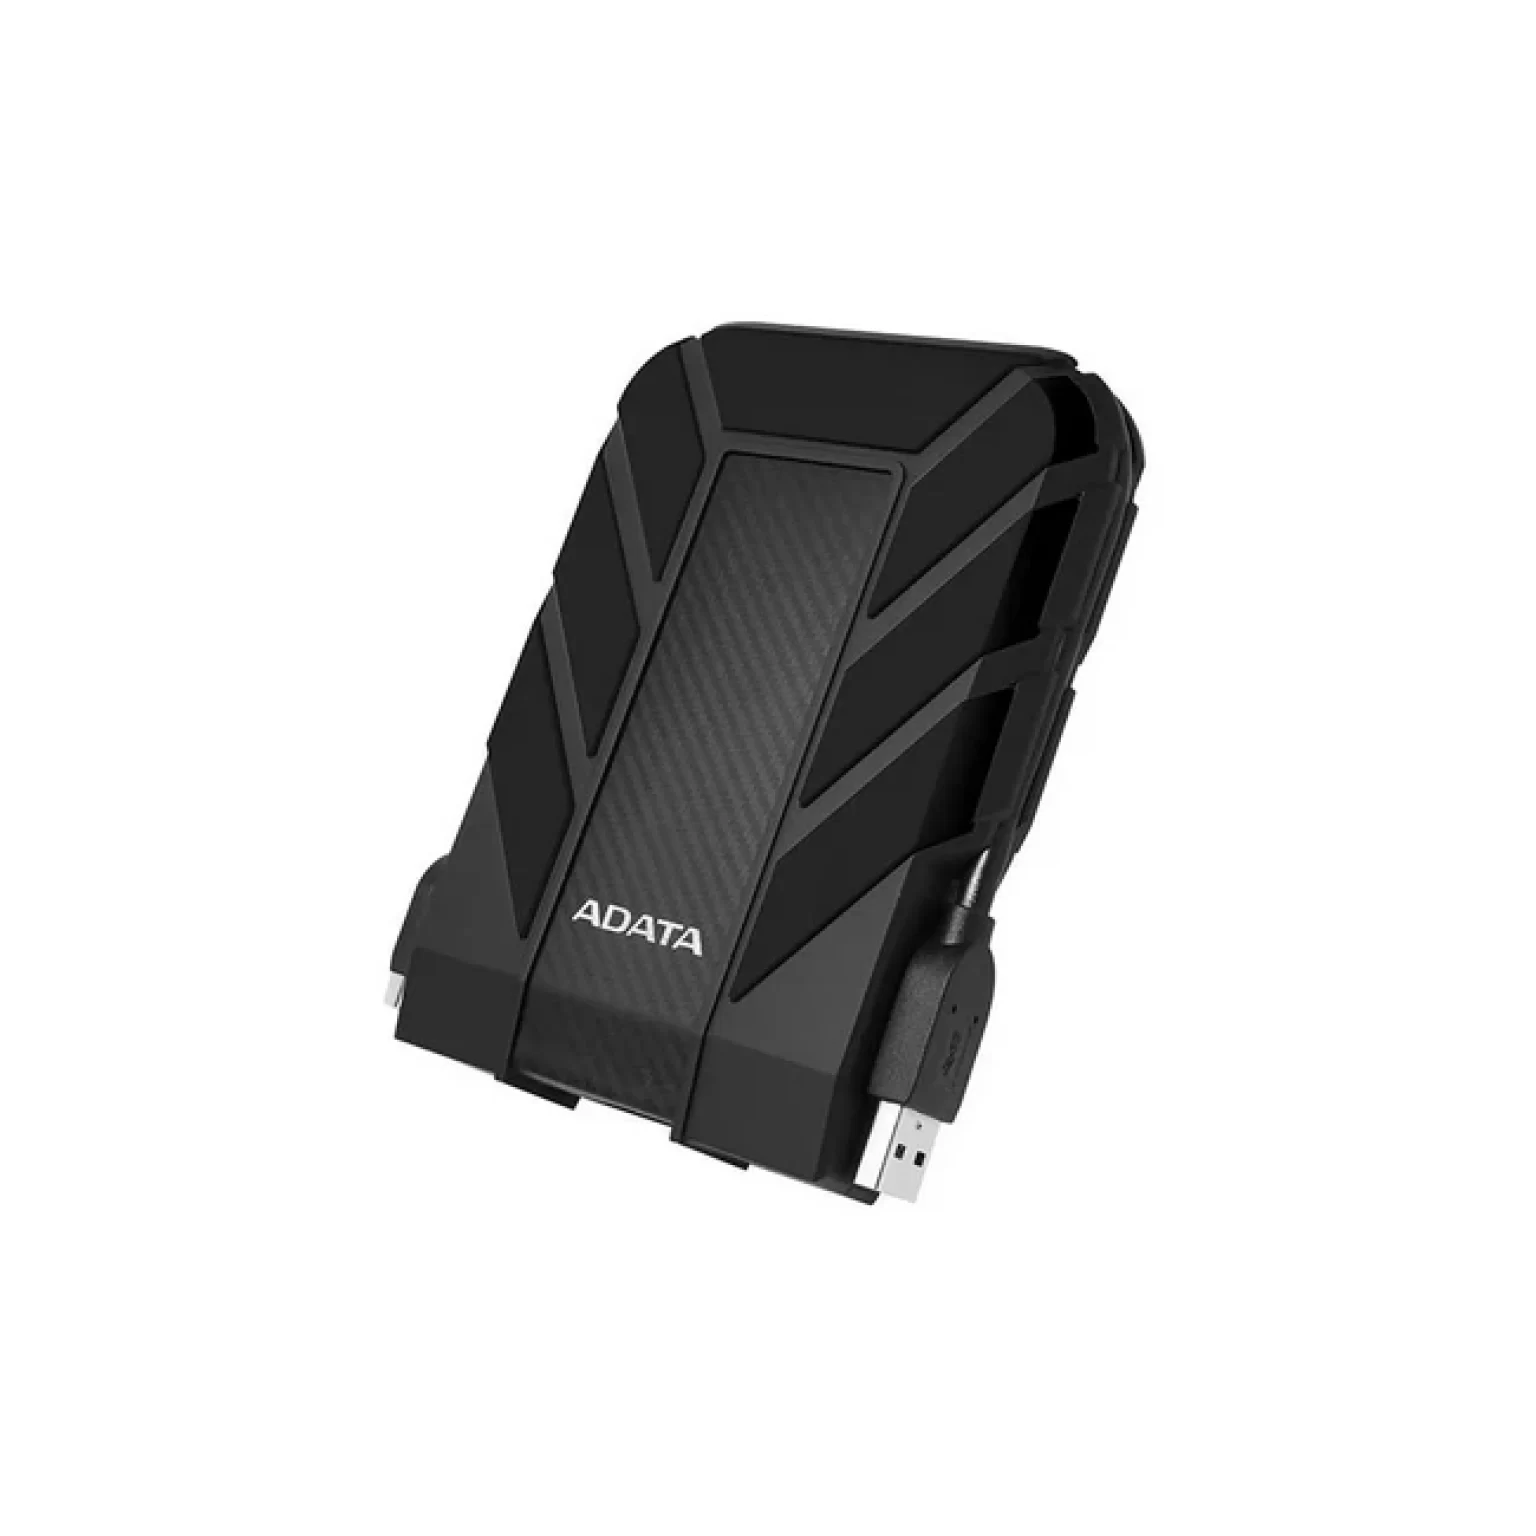 ADATA HD710 Pro 2